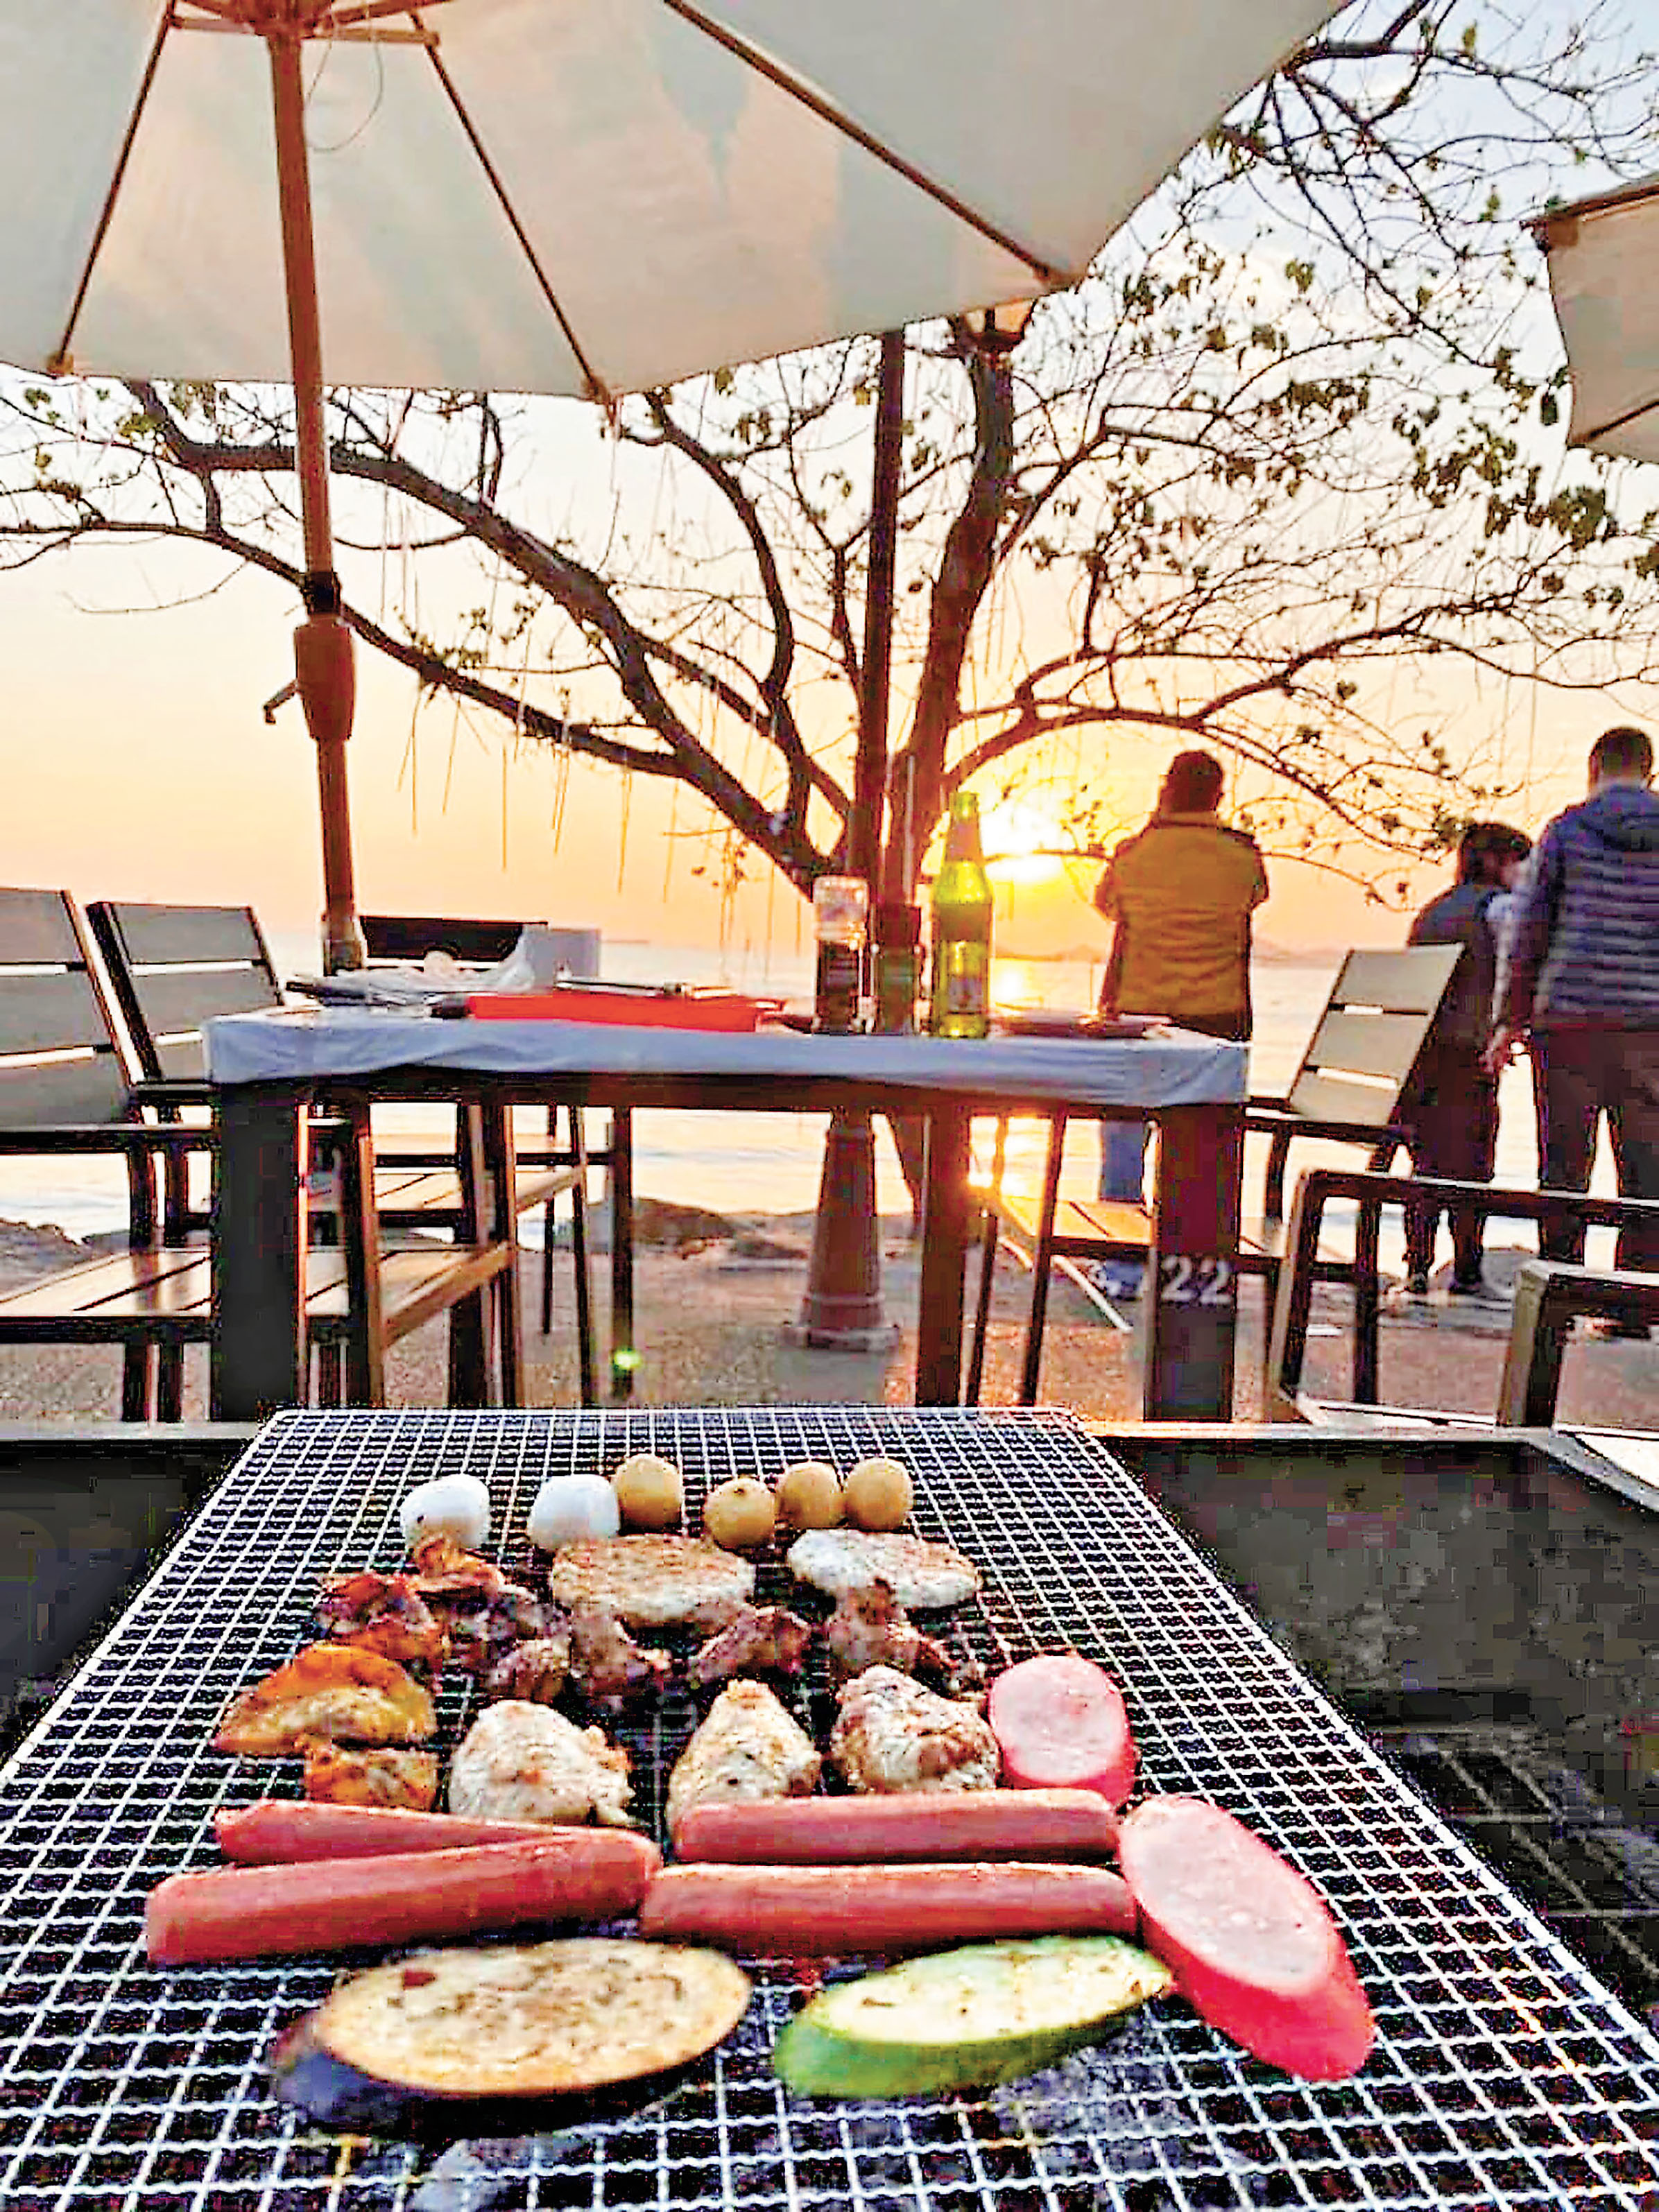 ■龍鼓灘海邊BBQ可欣賞日落。